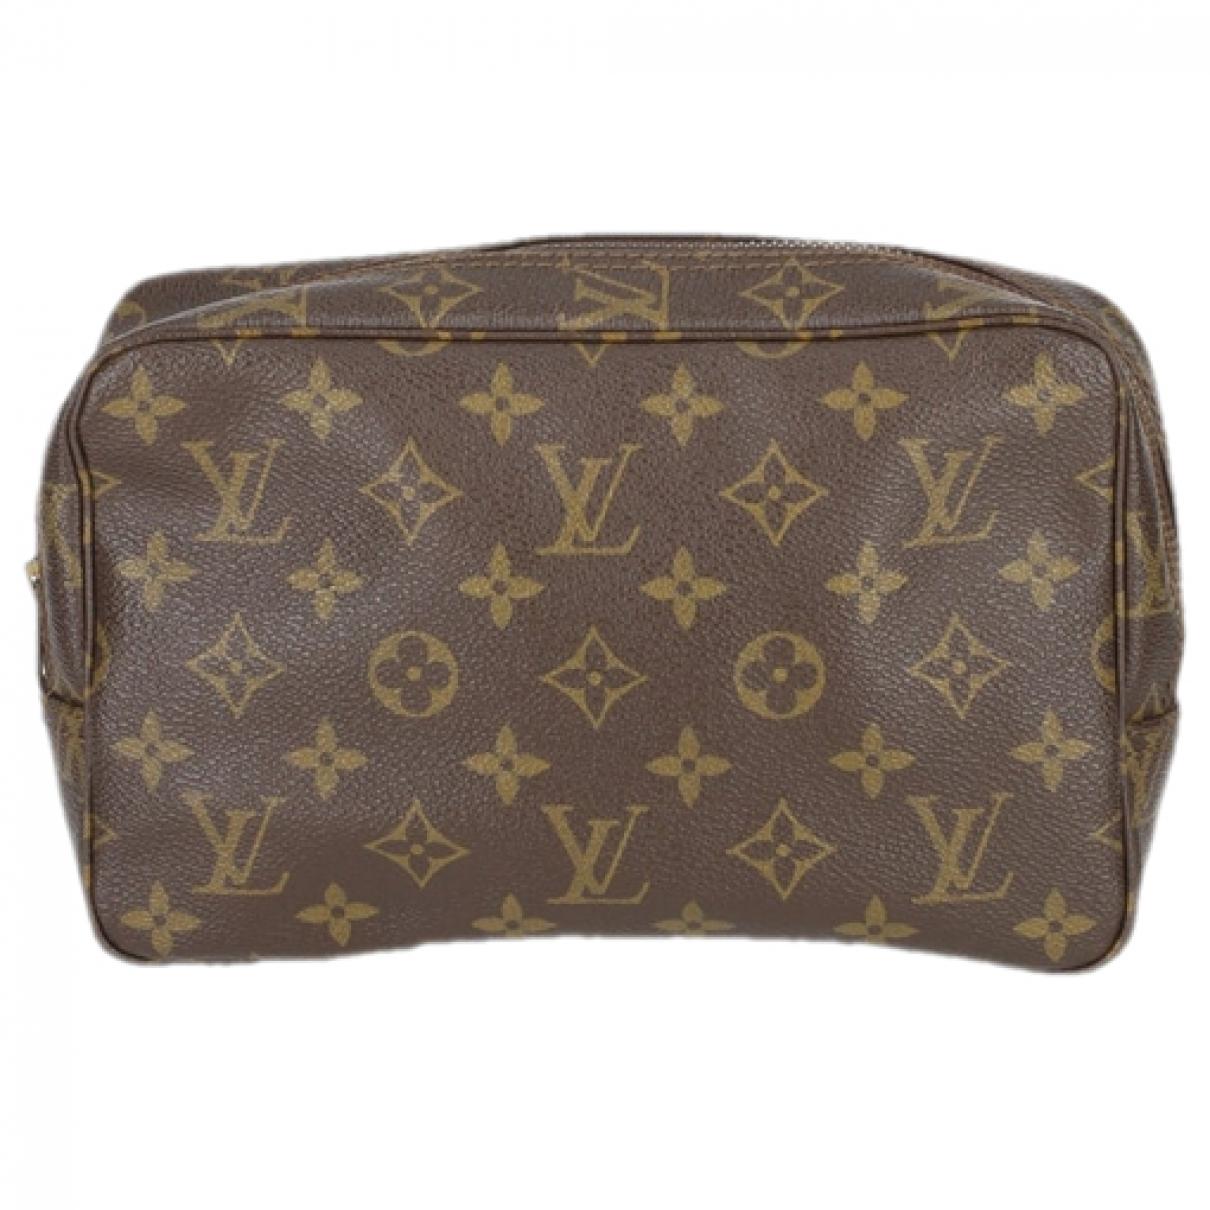 Trousse de toilette cloth travel bag Louis Vuitton Brown in Cloth - 36585582